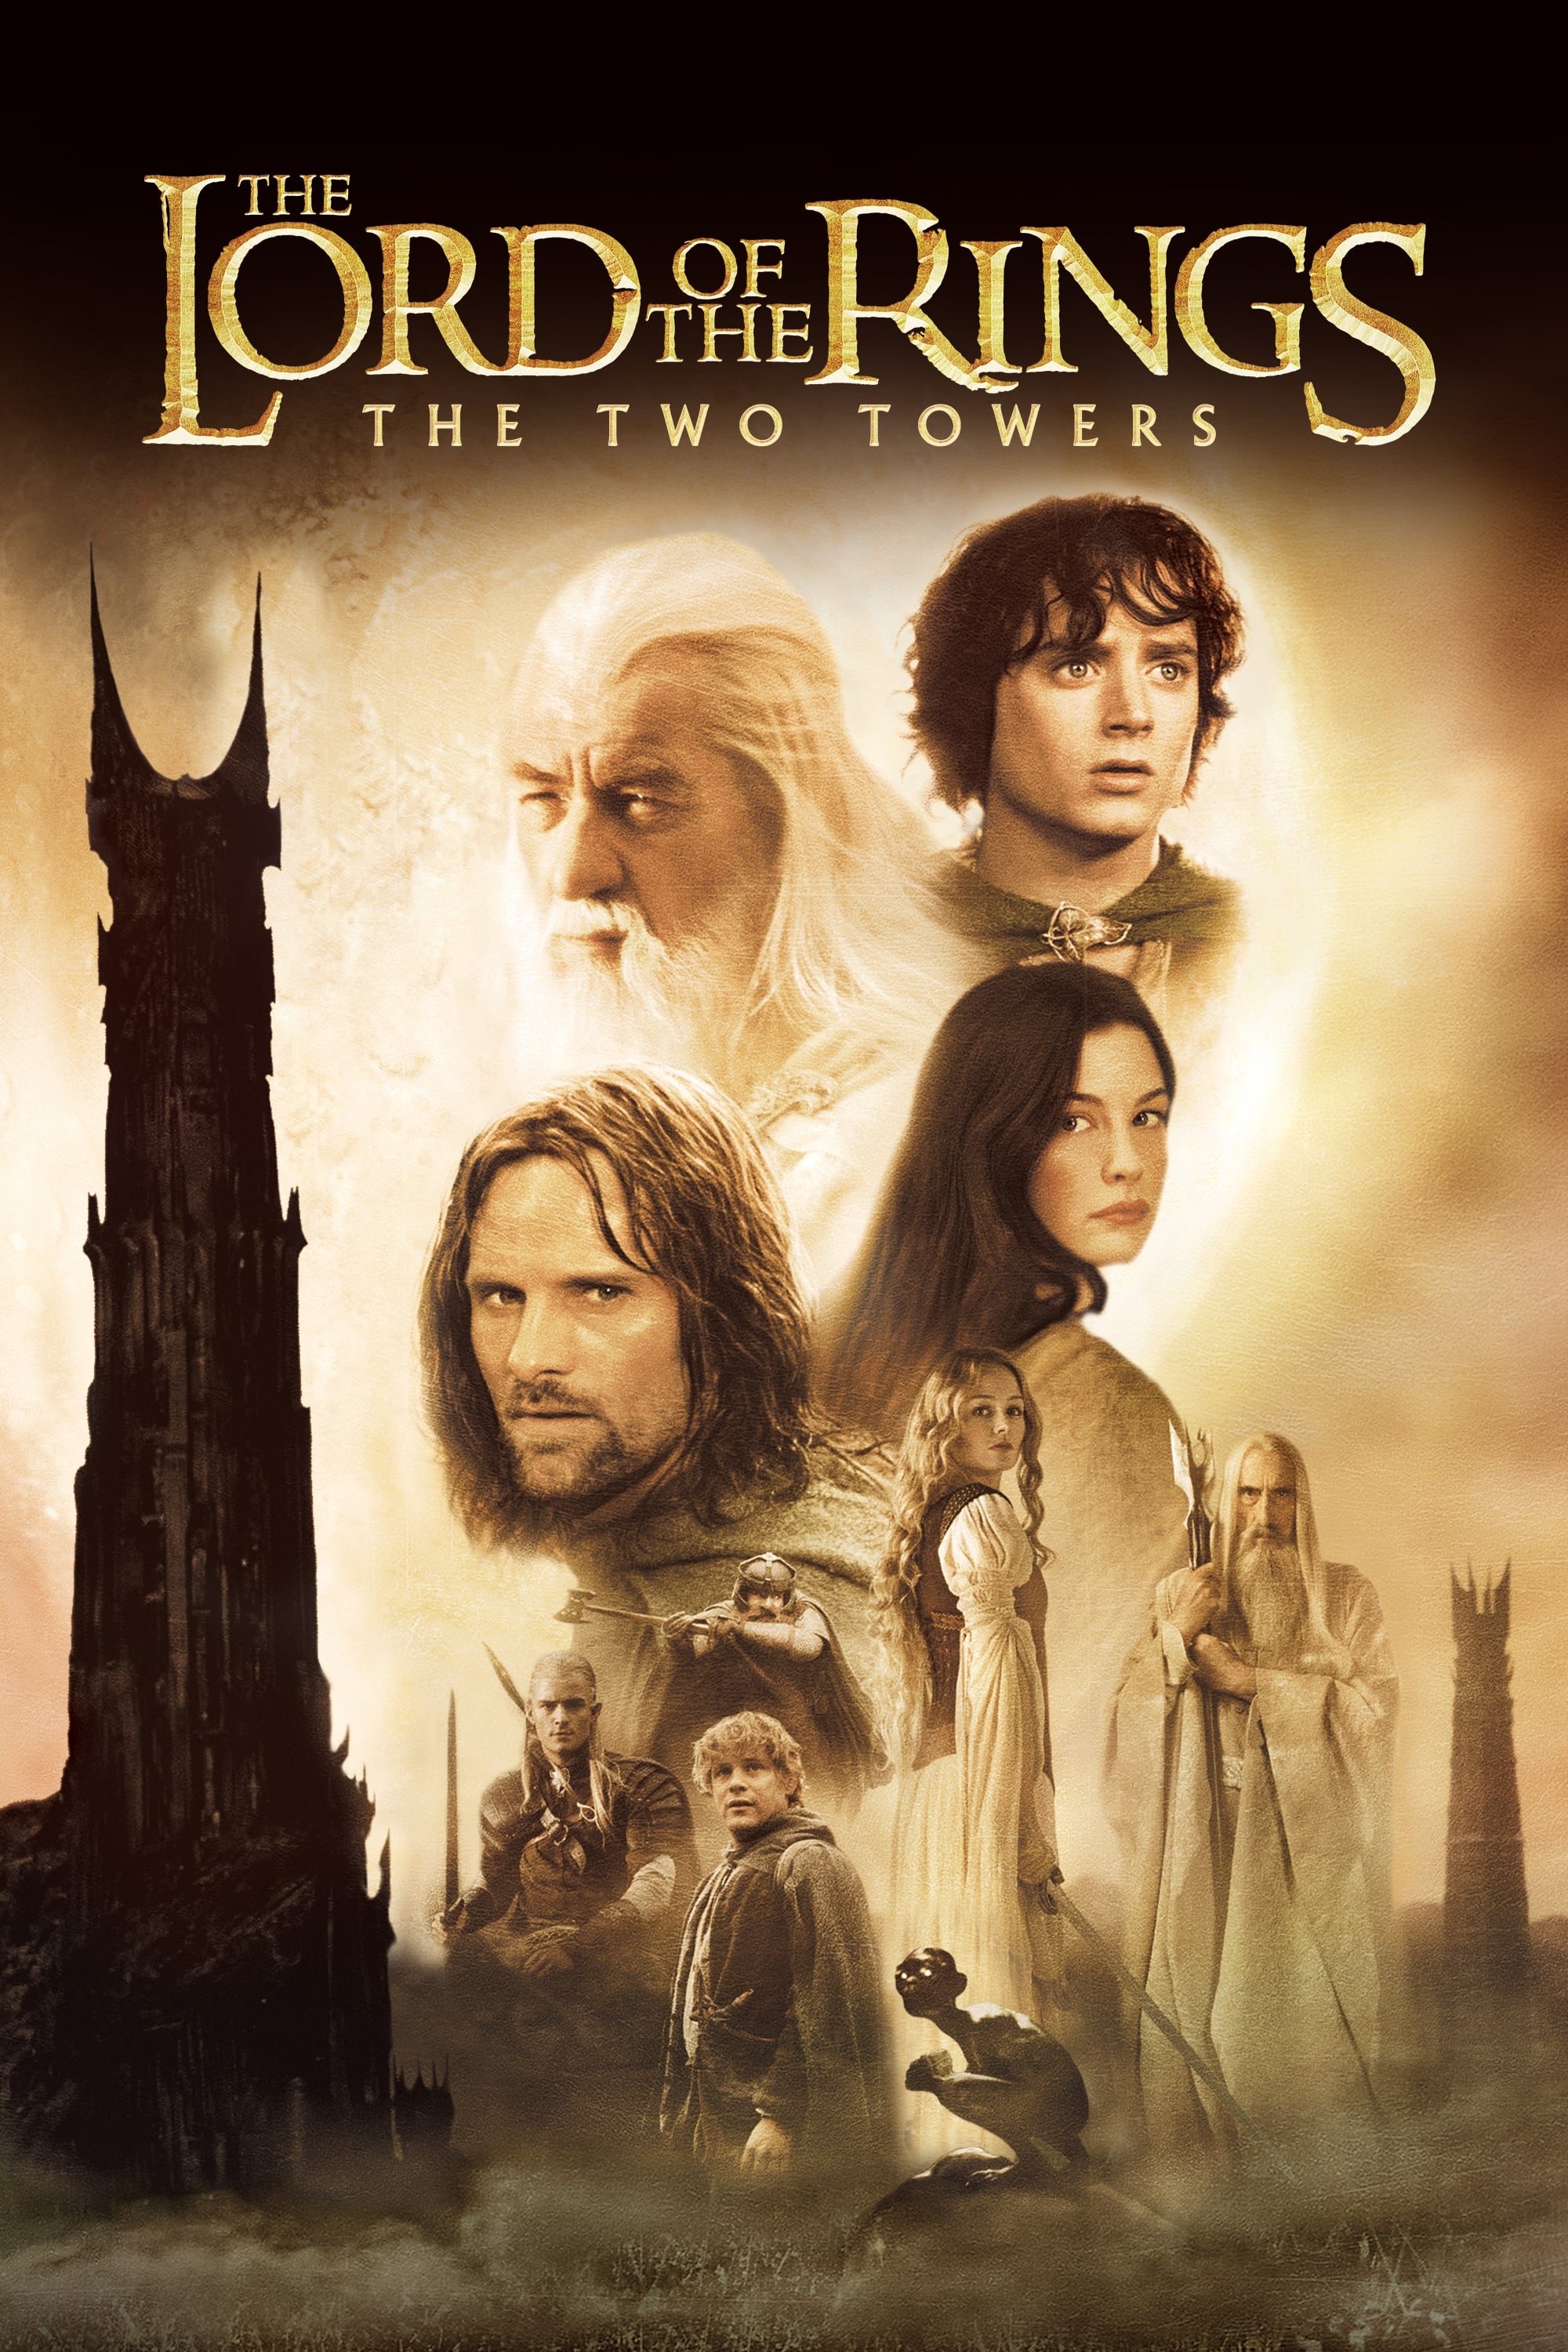 El señor de los anillos: Las dos torres (2002)